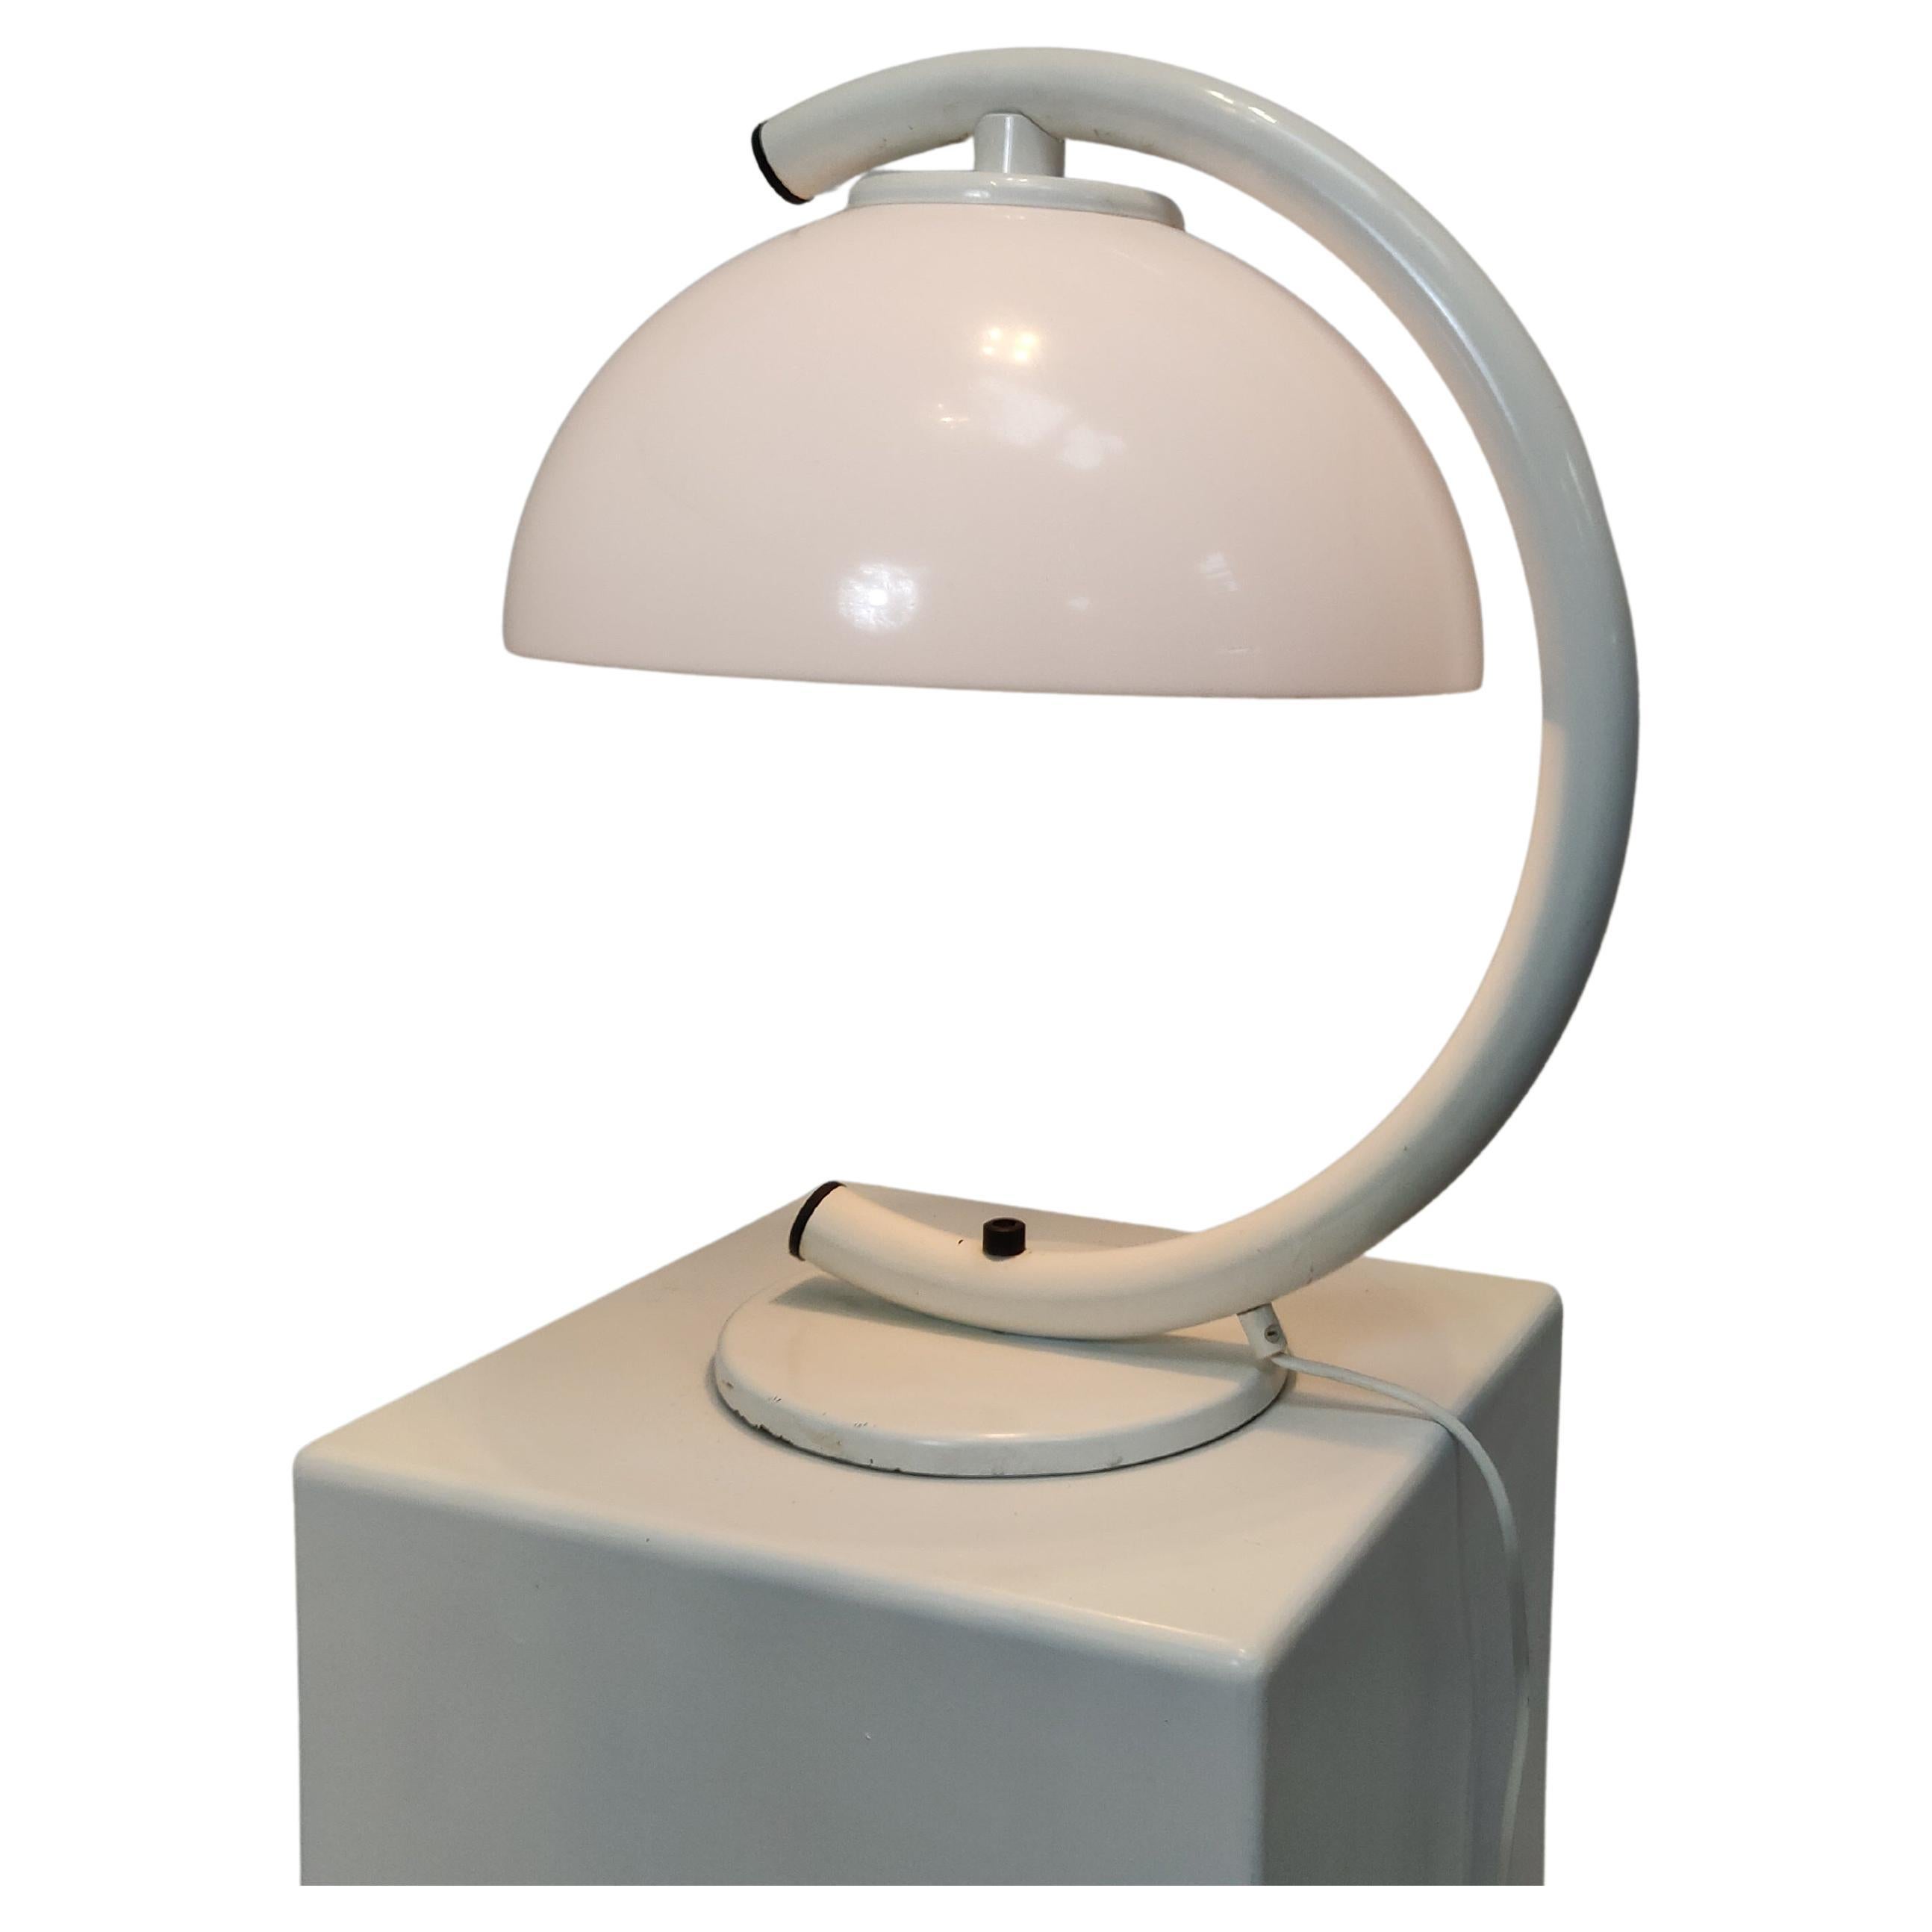 Dutch design Mushroom table lamp by Vrieland, 1980s. For Sale at 1stDibs |  vrieland design lamp